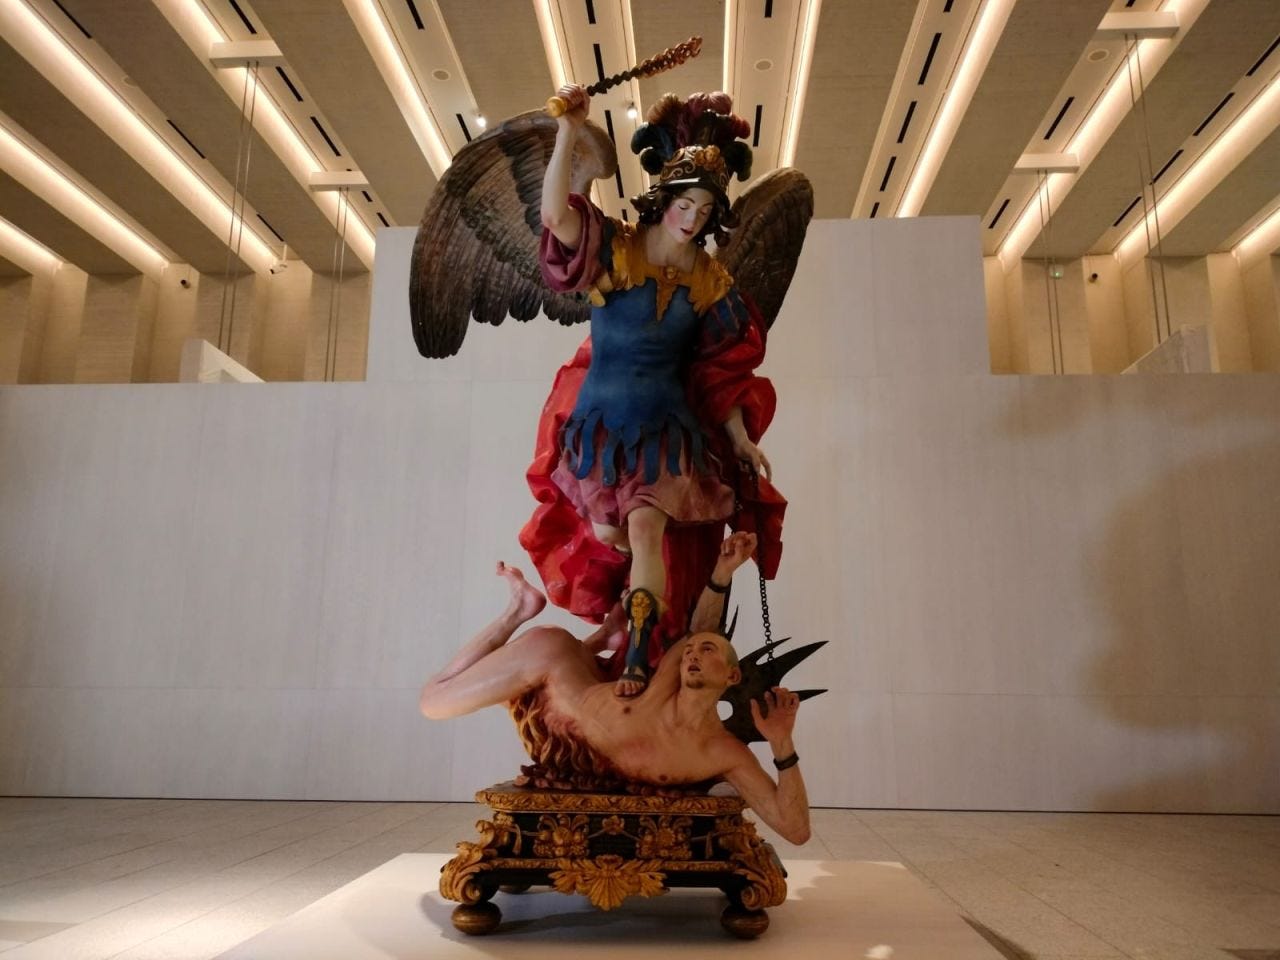 El Arcángel San Miguel venciendo al demonio at the Royal Collections Gallery in Madrid, Spain.